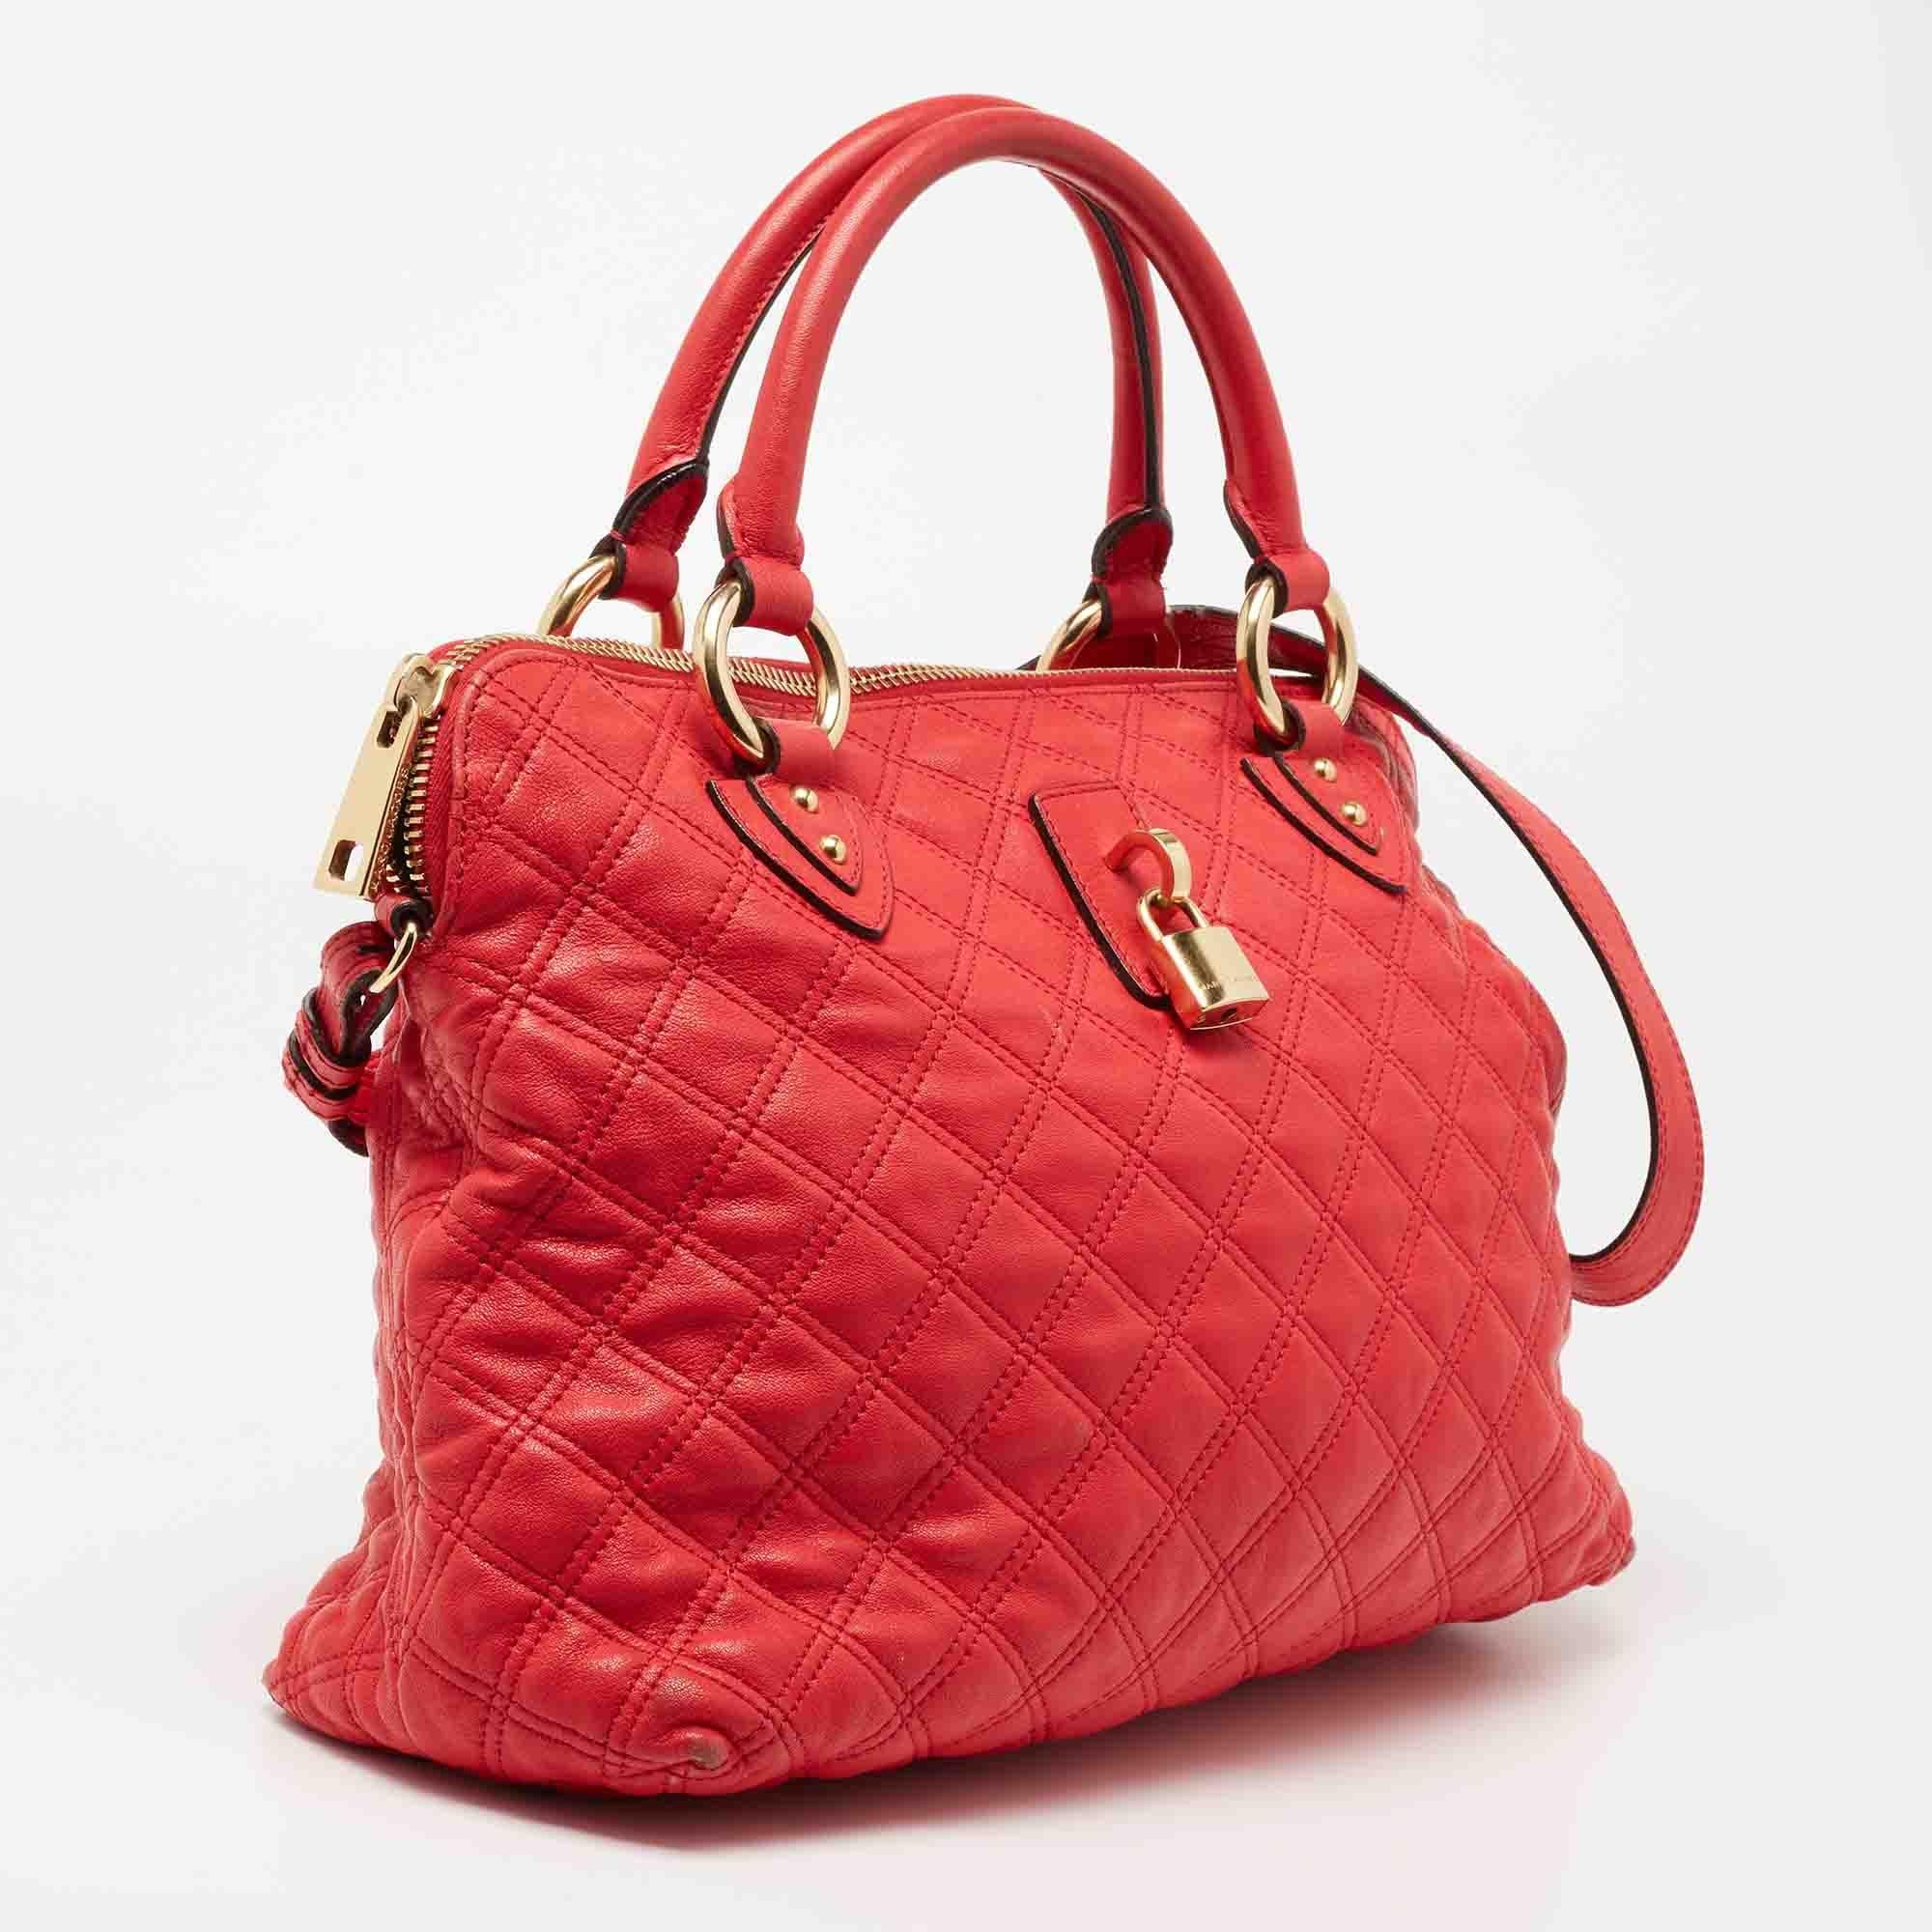 coral color handbags